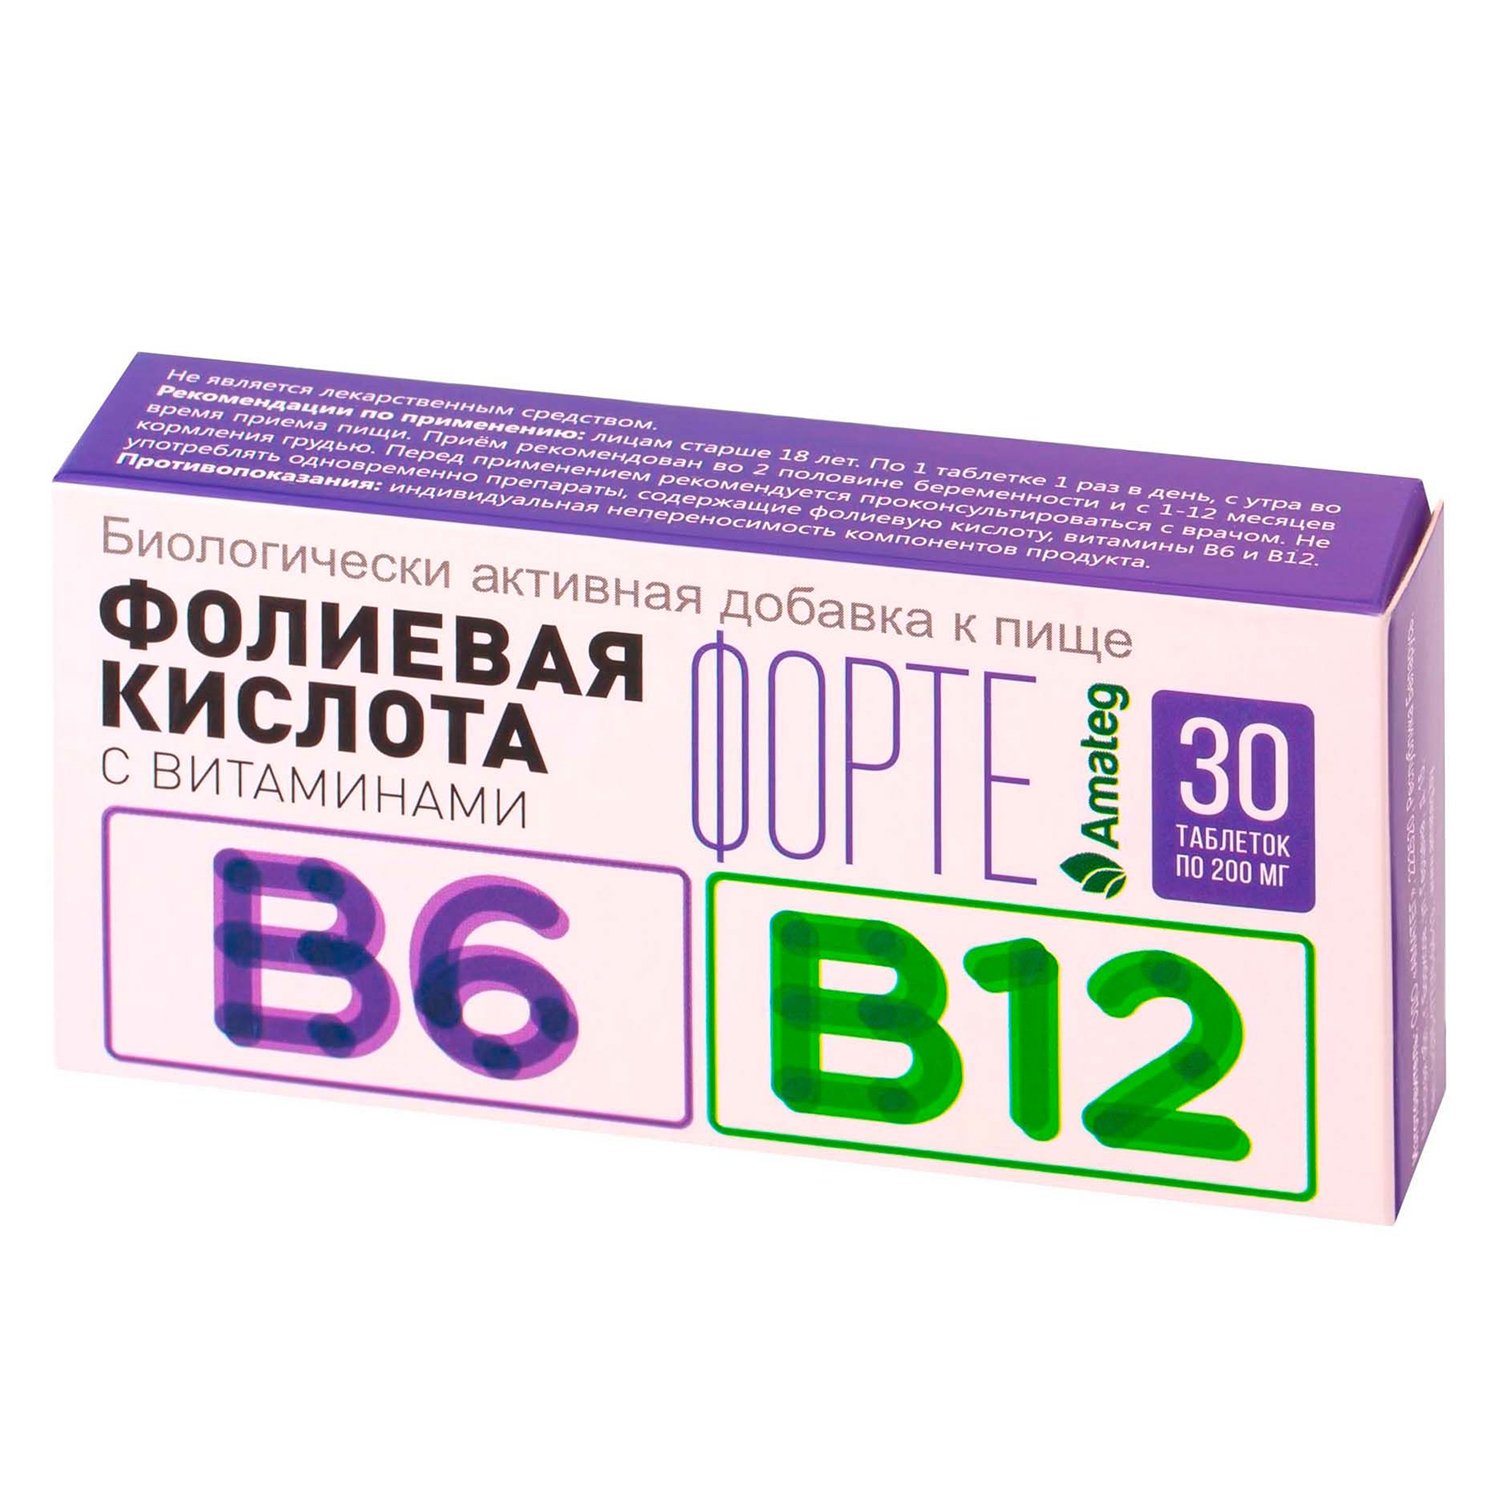 Таблетки b12 с фолиевой кислотой. Фолиевая кислота с витаминами b12 и b6 таблетки. Фолиевая кислота с витаминами в12 и в6. Витамин б12 и фолиевая кислота в таблетках. Фолиевая кислота с витаминами в12 и в6 таблетки.